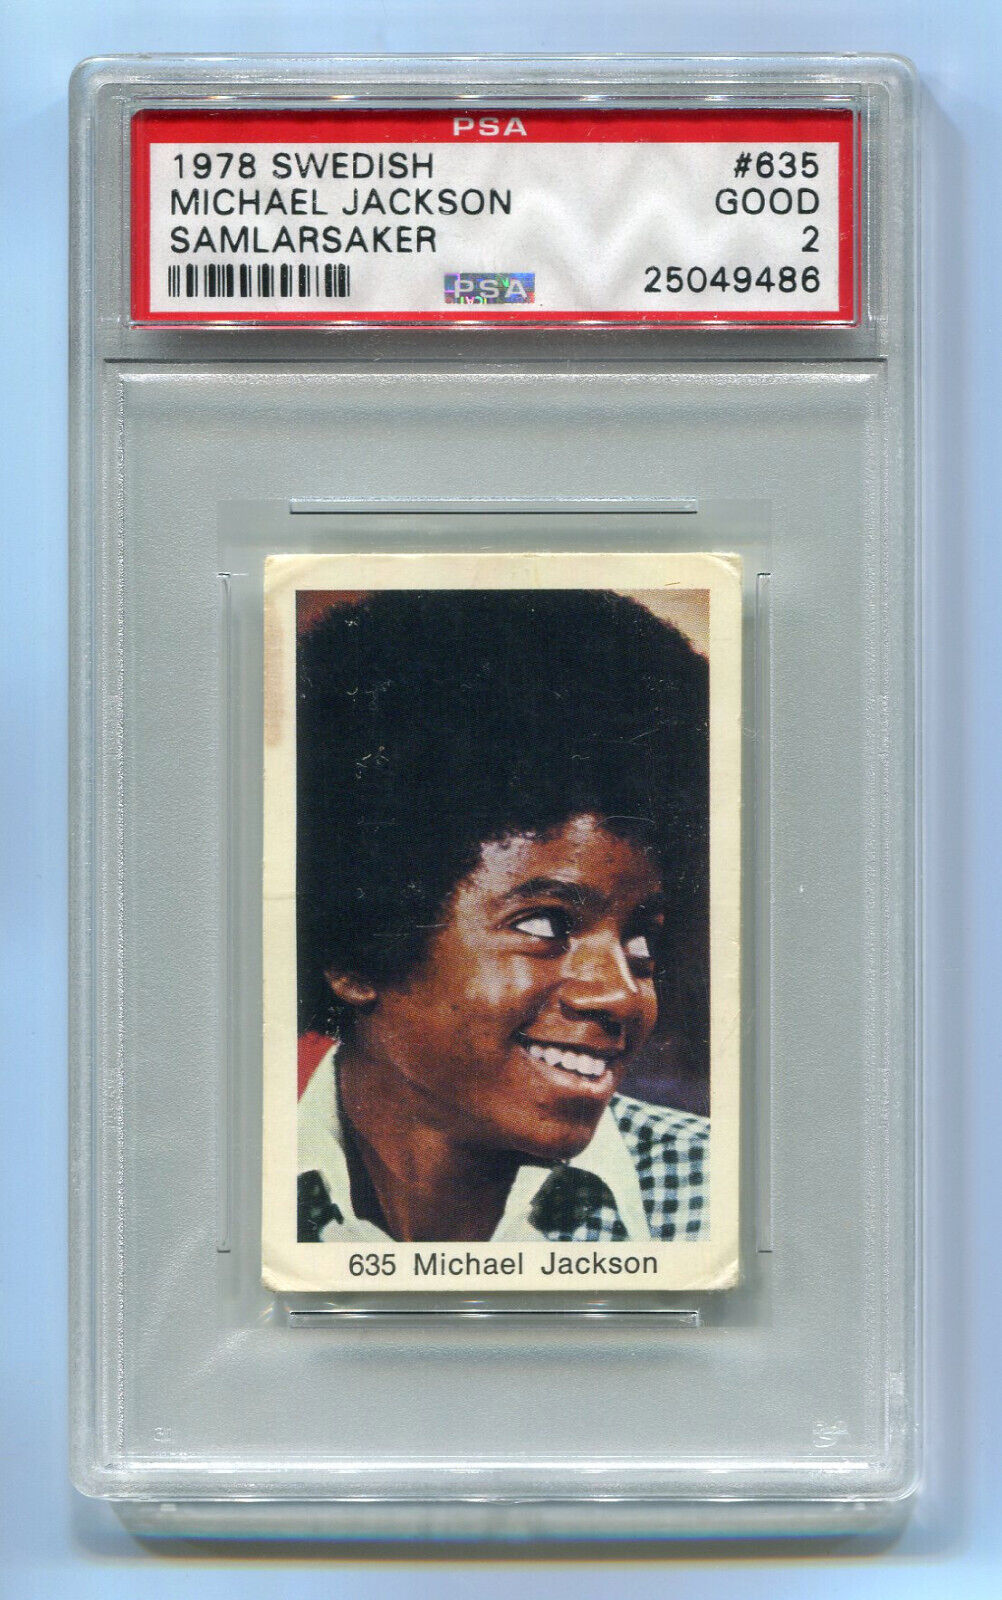 1975 Popbilder Med Punkt III 1978 Samlarsaker 635 Michael Jackson Five PSA 2 NQ